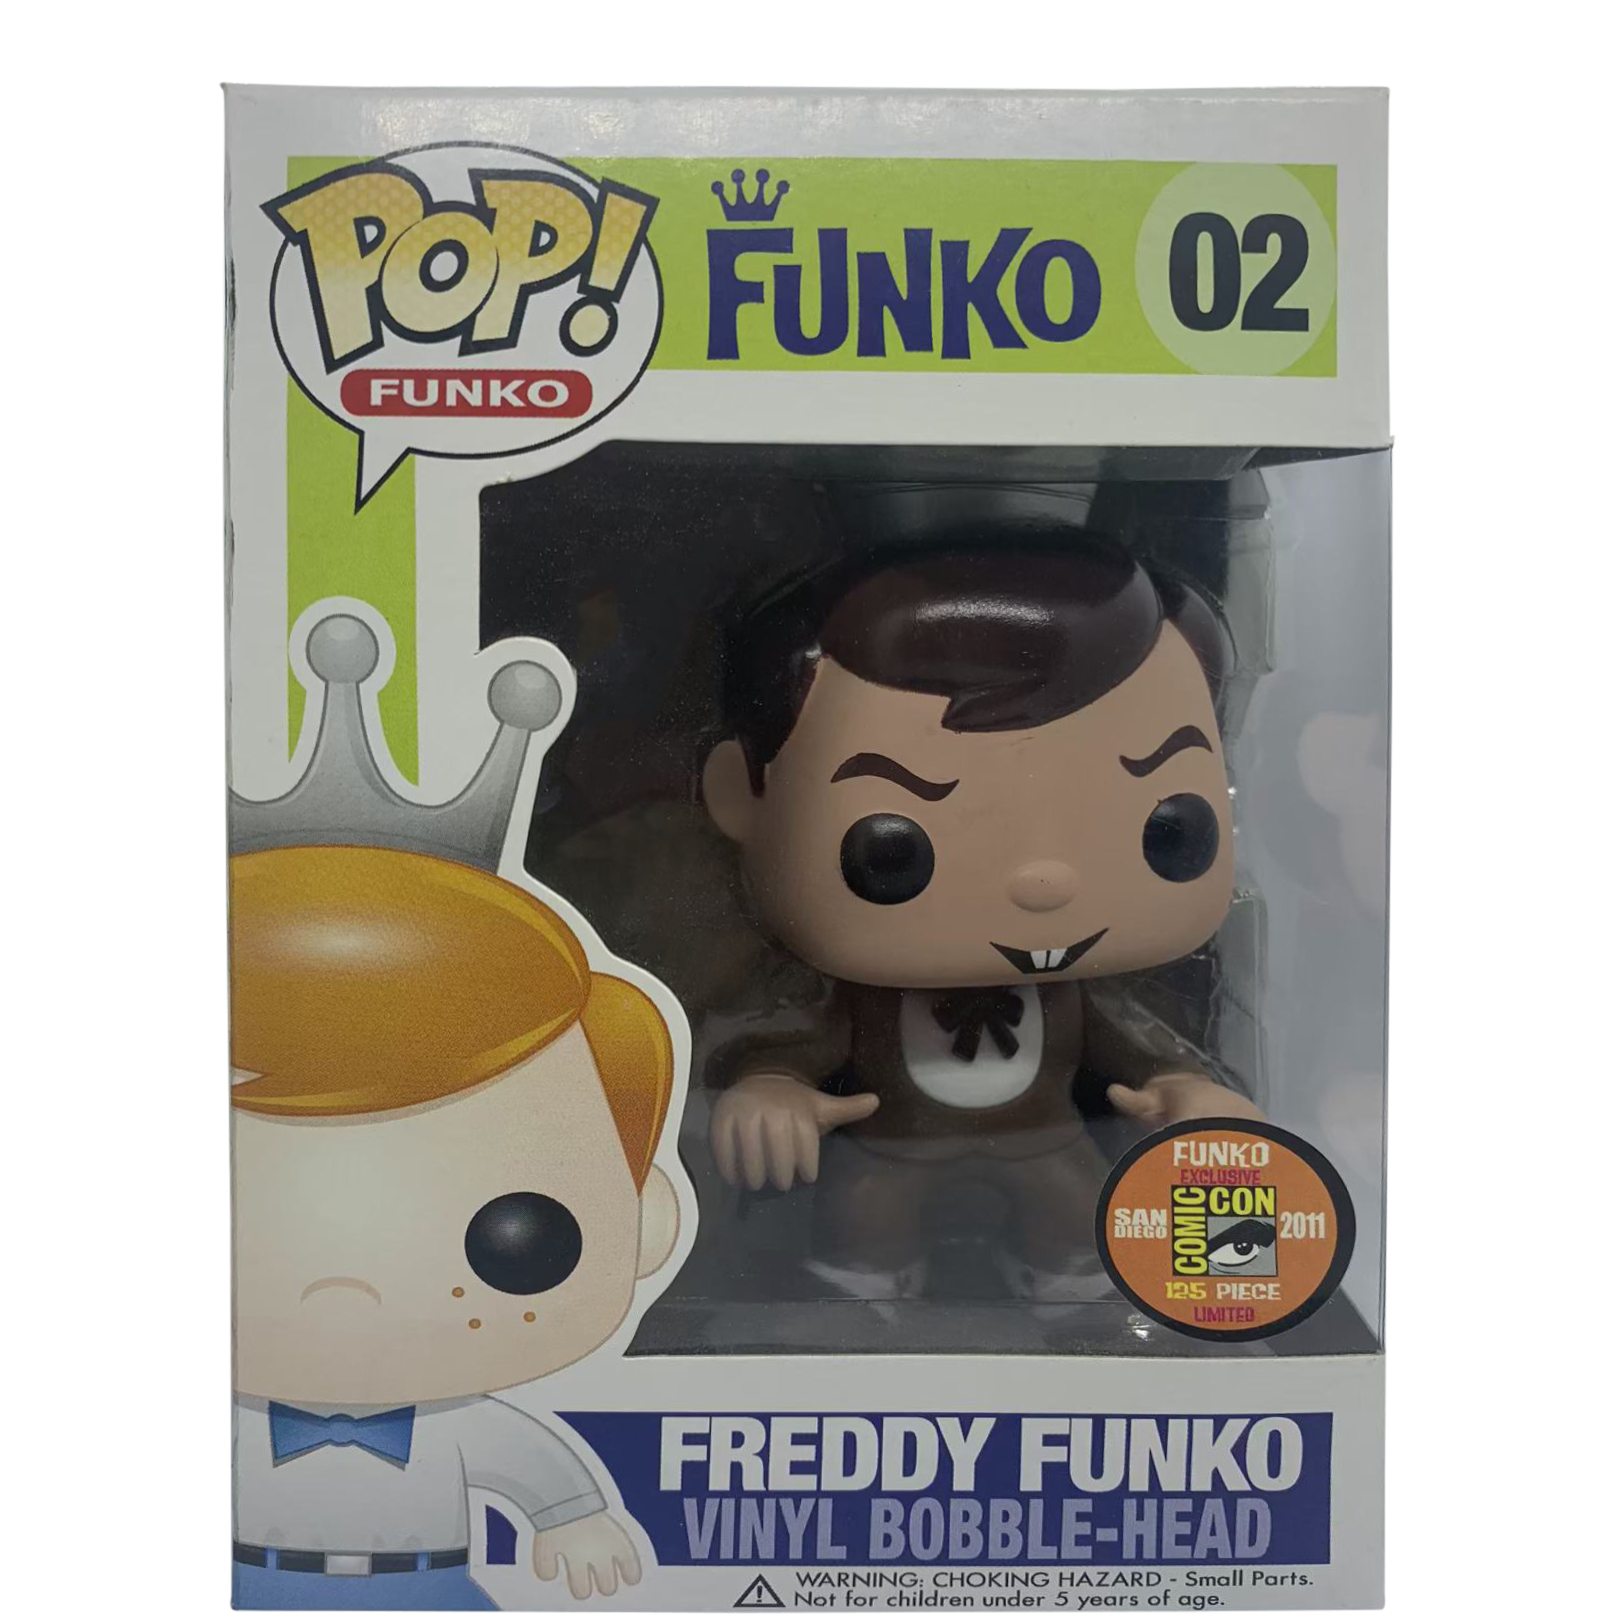 Funko Pop! Freddy Funko Count Chocula SDCC Bobble-Head Figure #02 - US